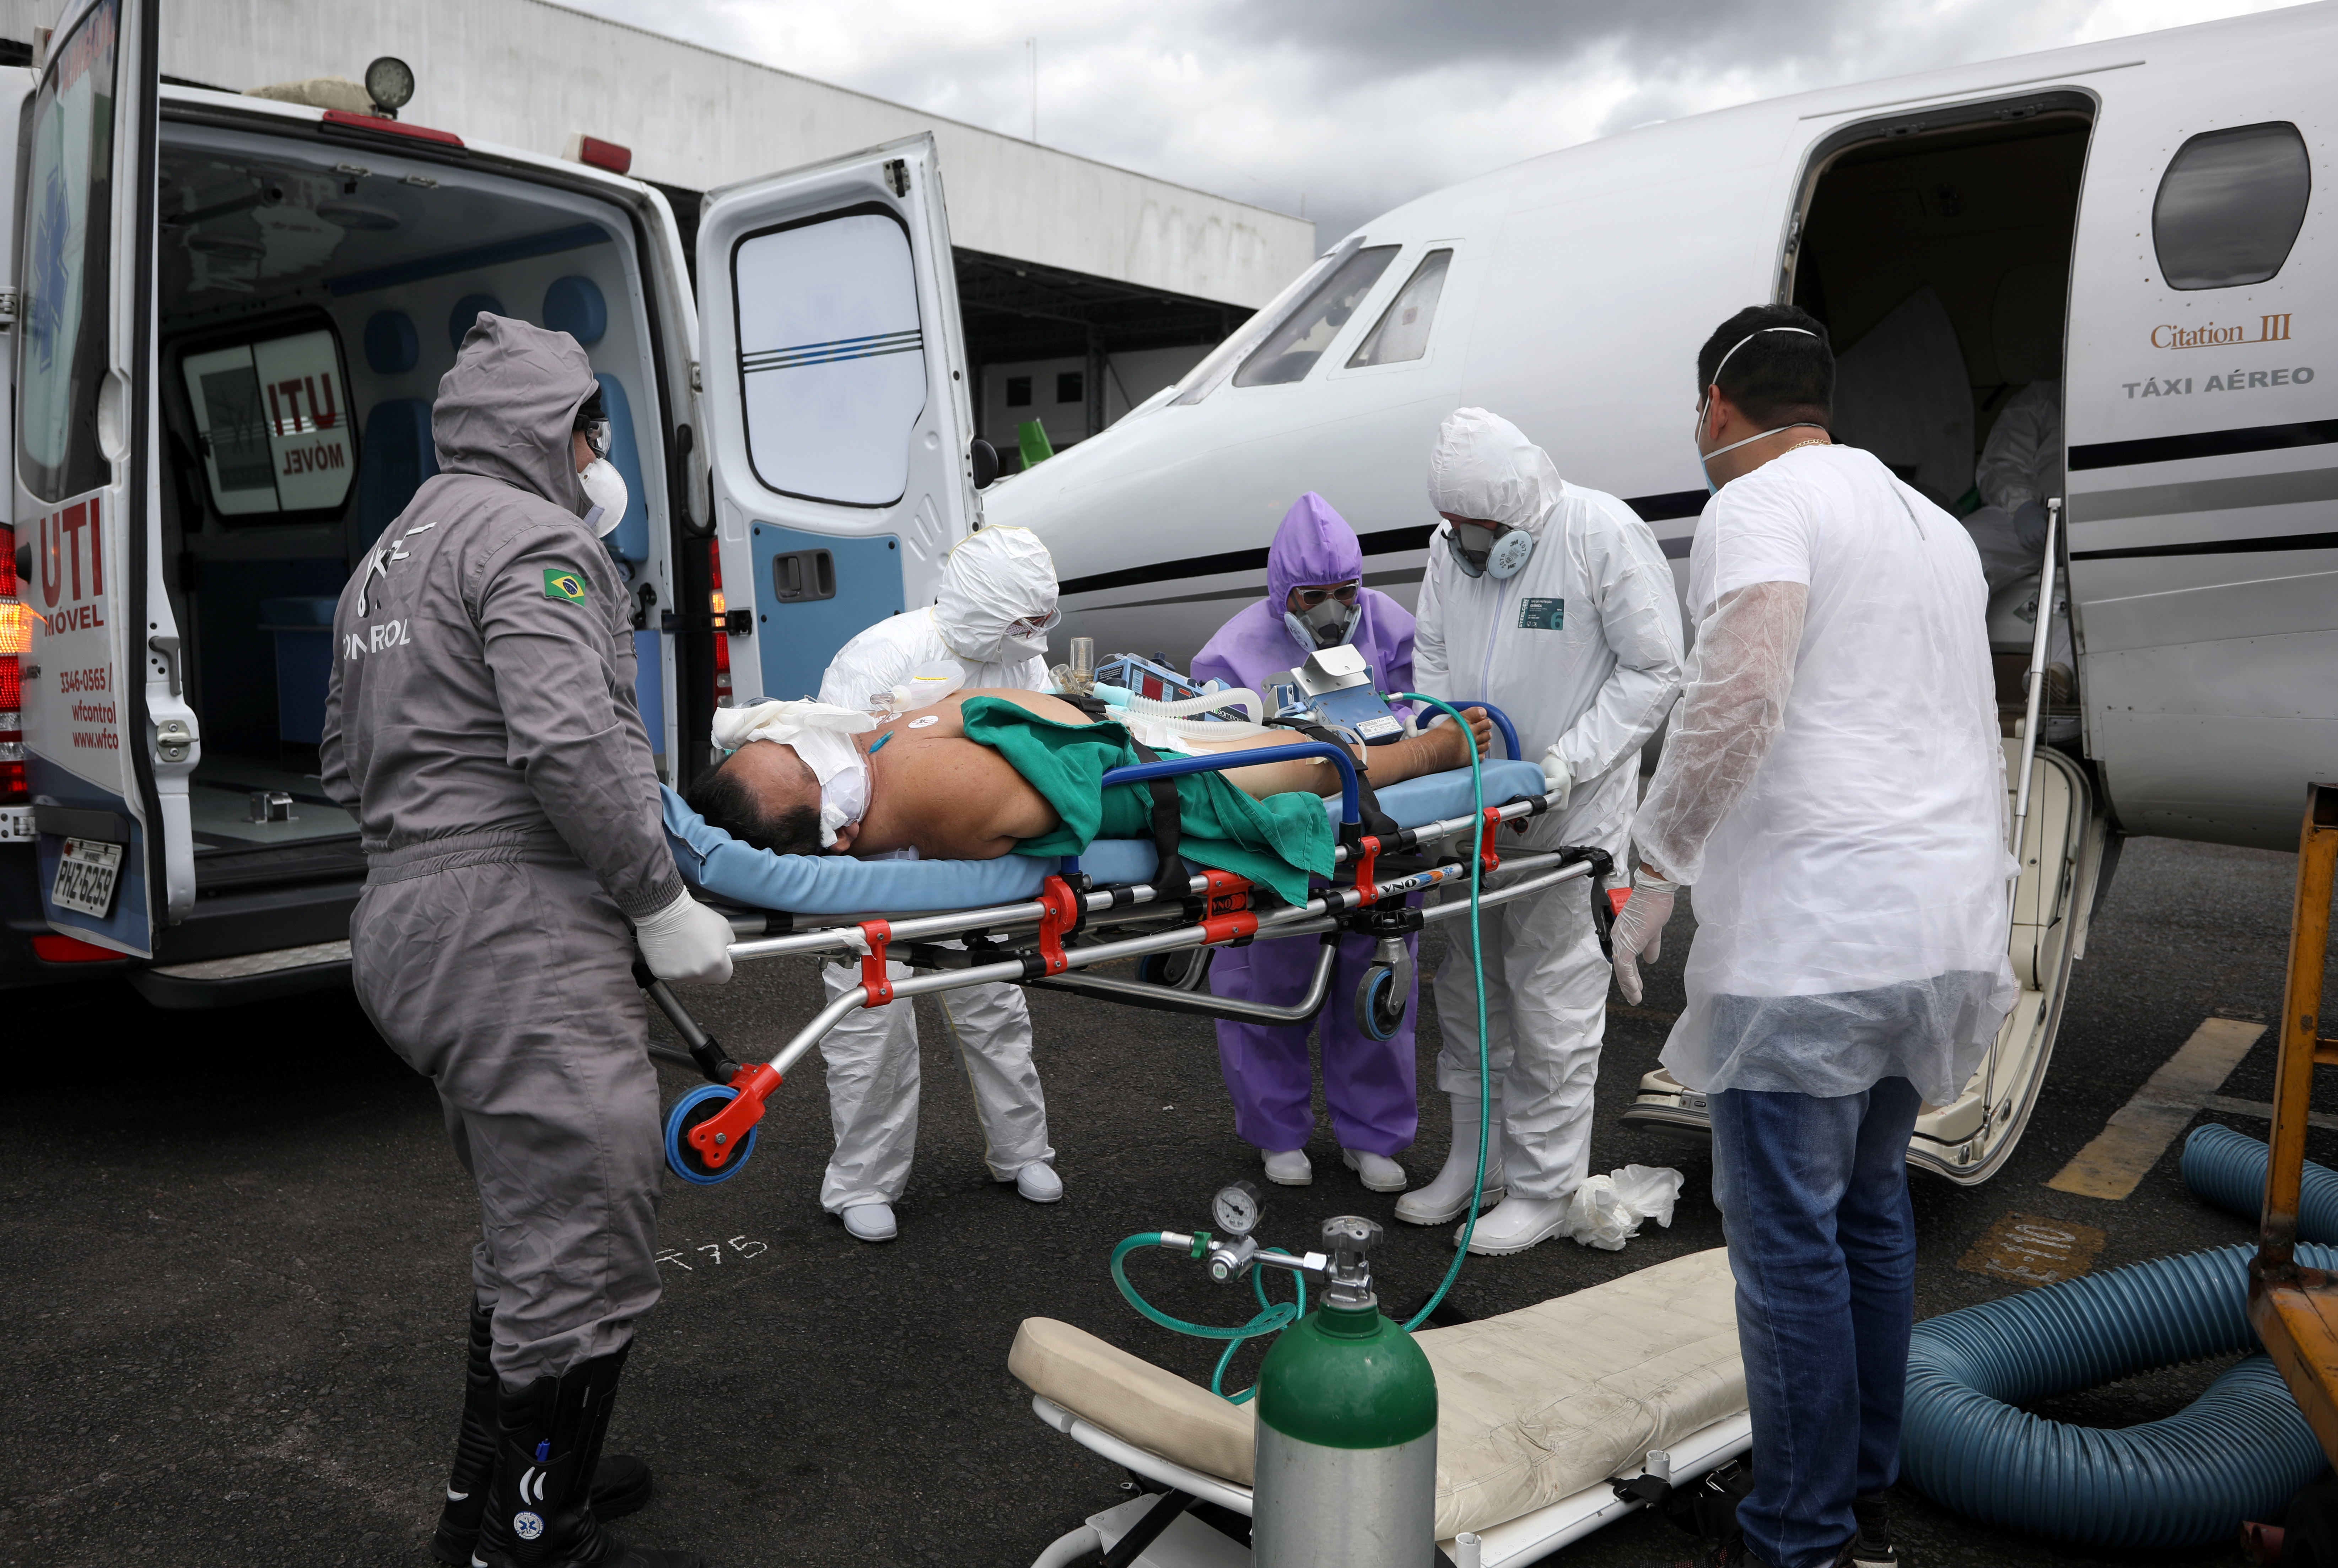 Otaviano Batista, de 67 años, un paciente que sufre la enfermedad coronavirus (COVID-19), es ayudado por trabajadores de la salud al salir de un avión de la UCI, que llega de Tabatinga a Manaos, Brasil, el 18 de mayo de 2020. REUTERS/Bruno Kelly